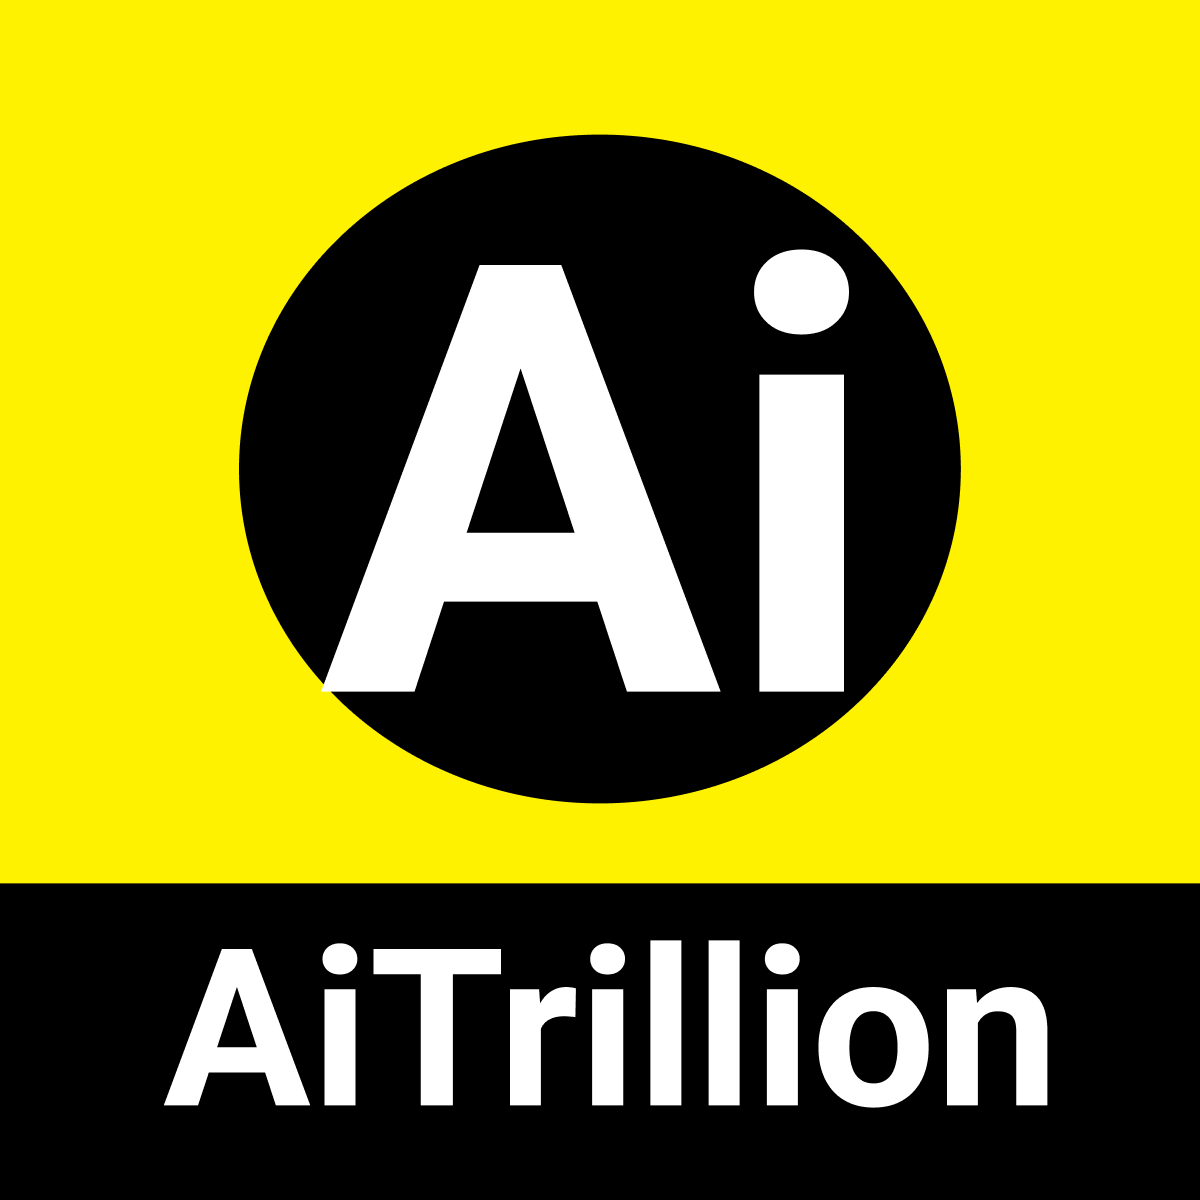 AI Trillion